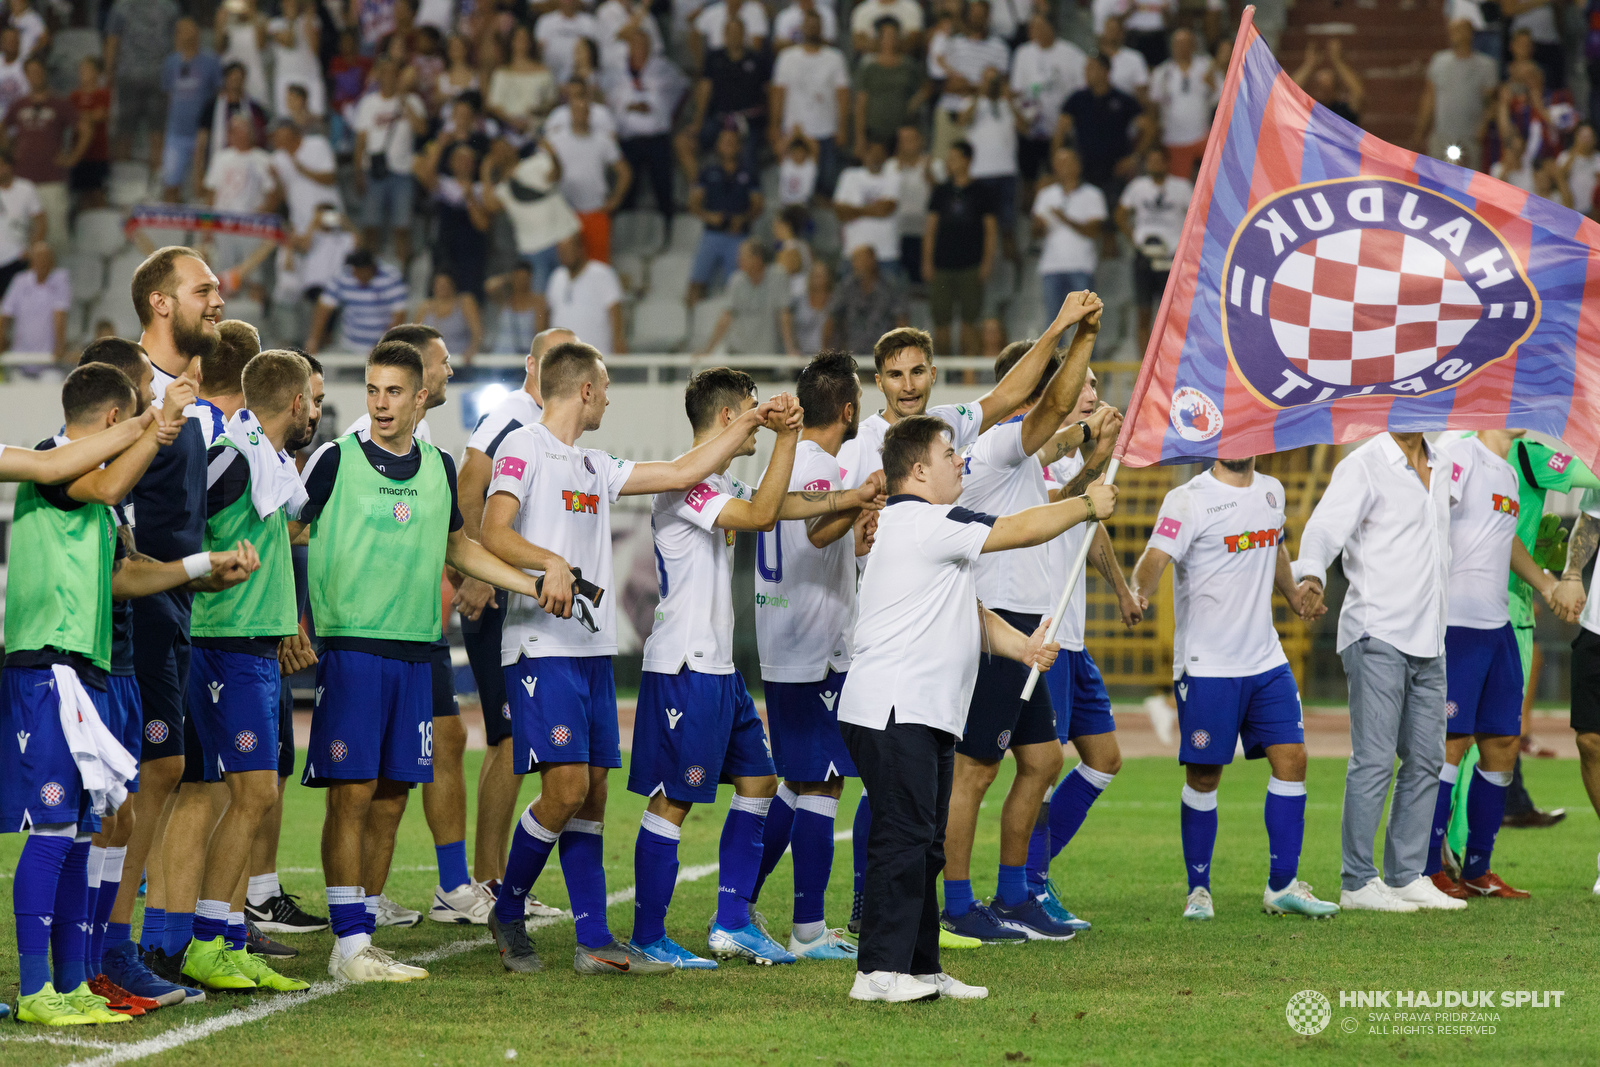 Rijeka, Hajduk Unlucky In Draw While Dinamo, Osijek Look To Make